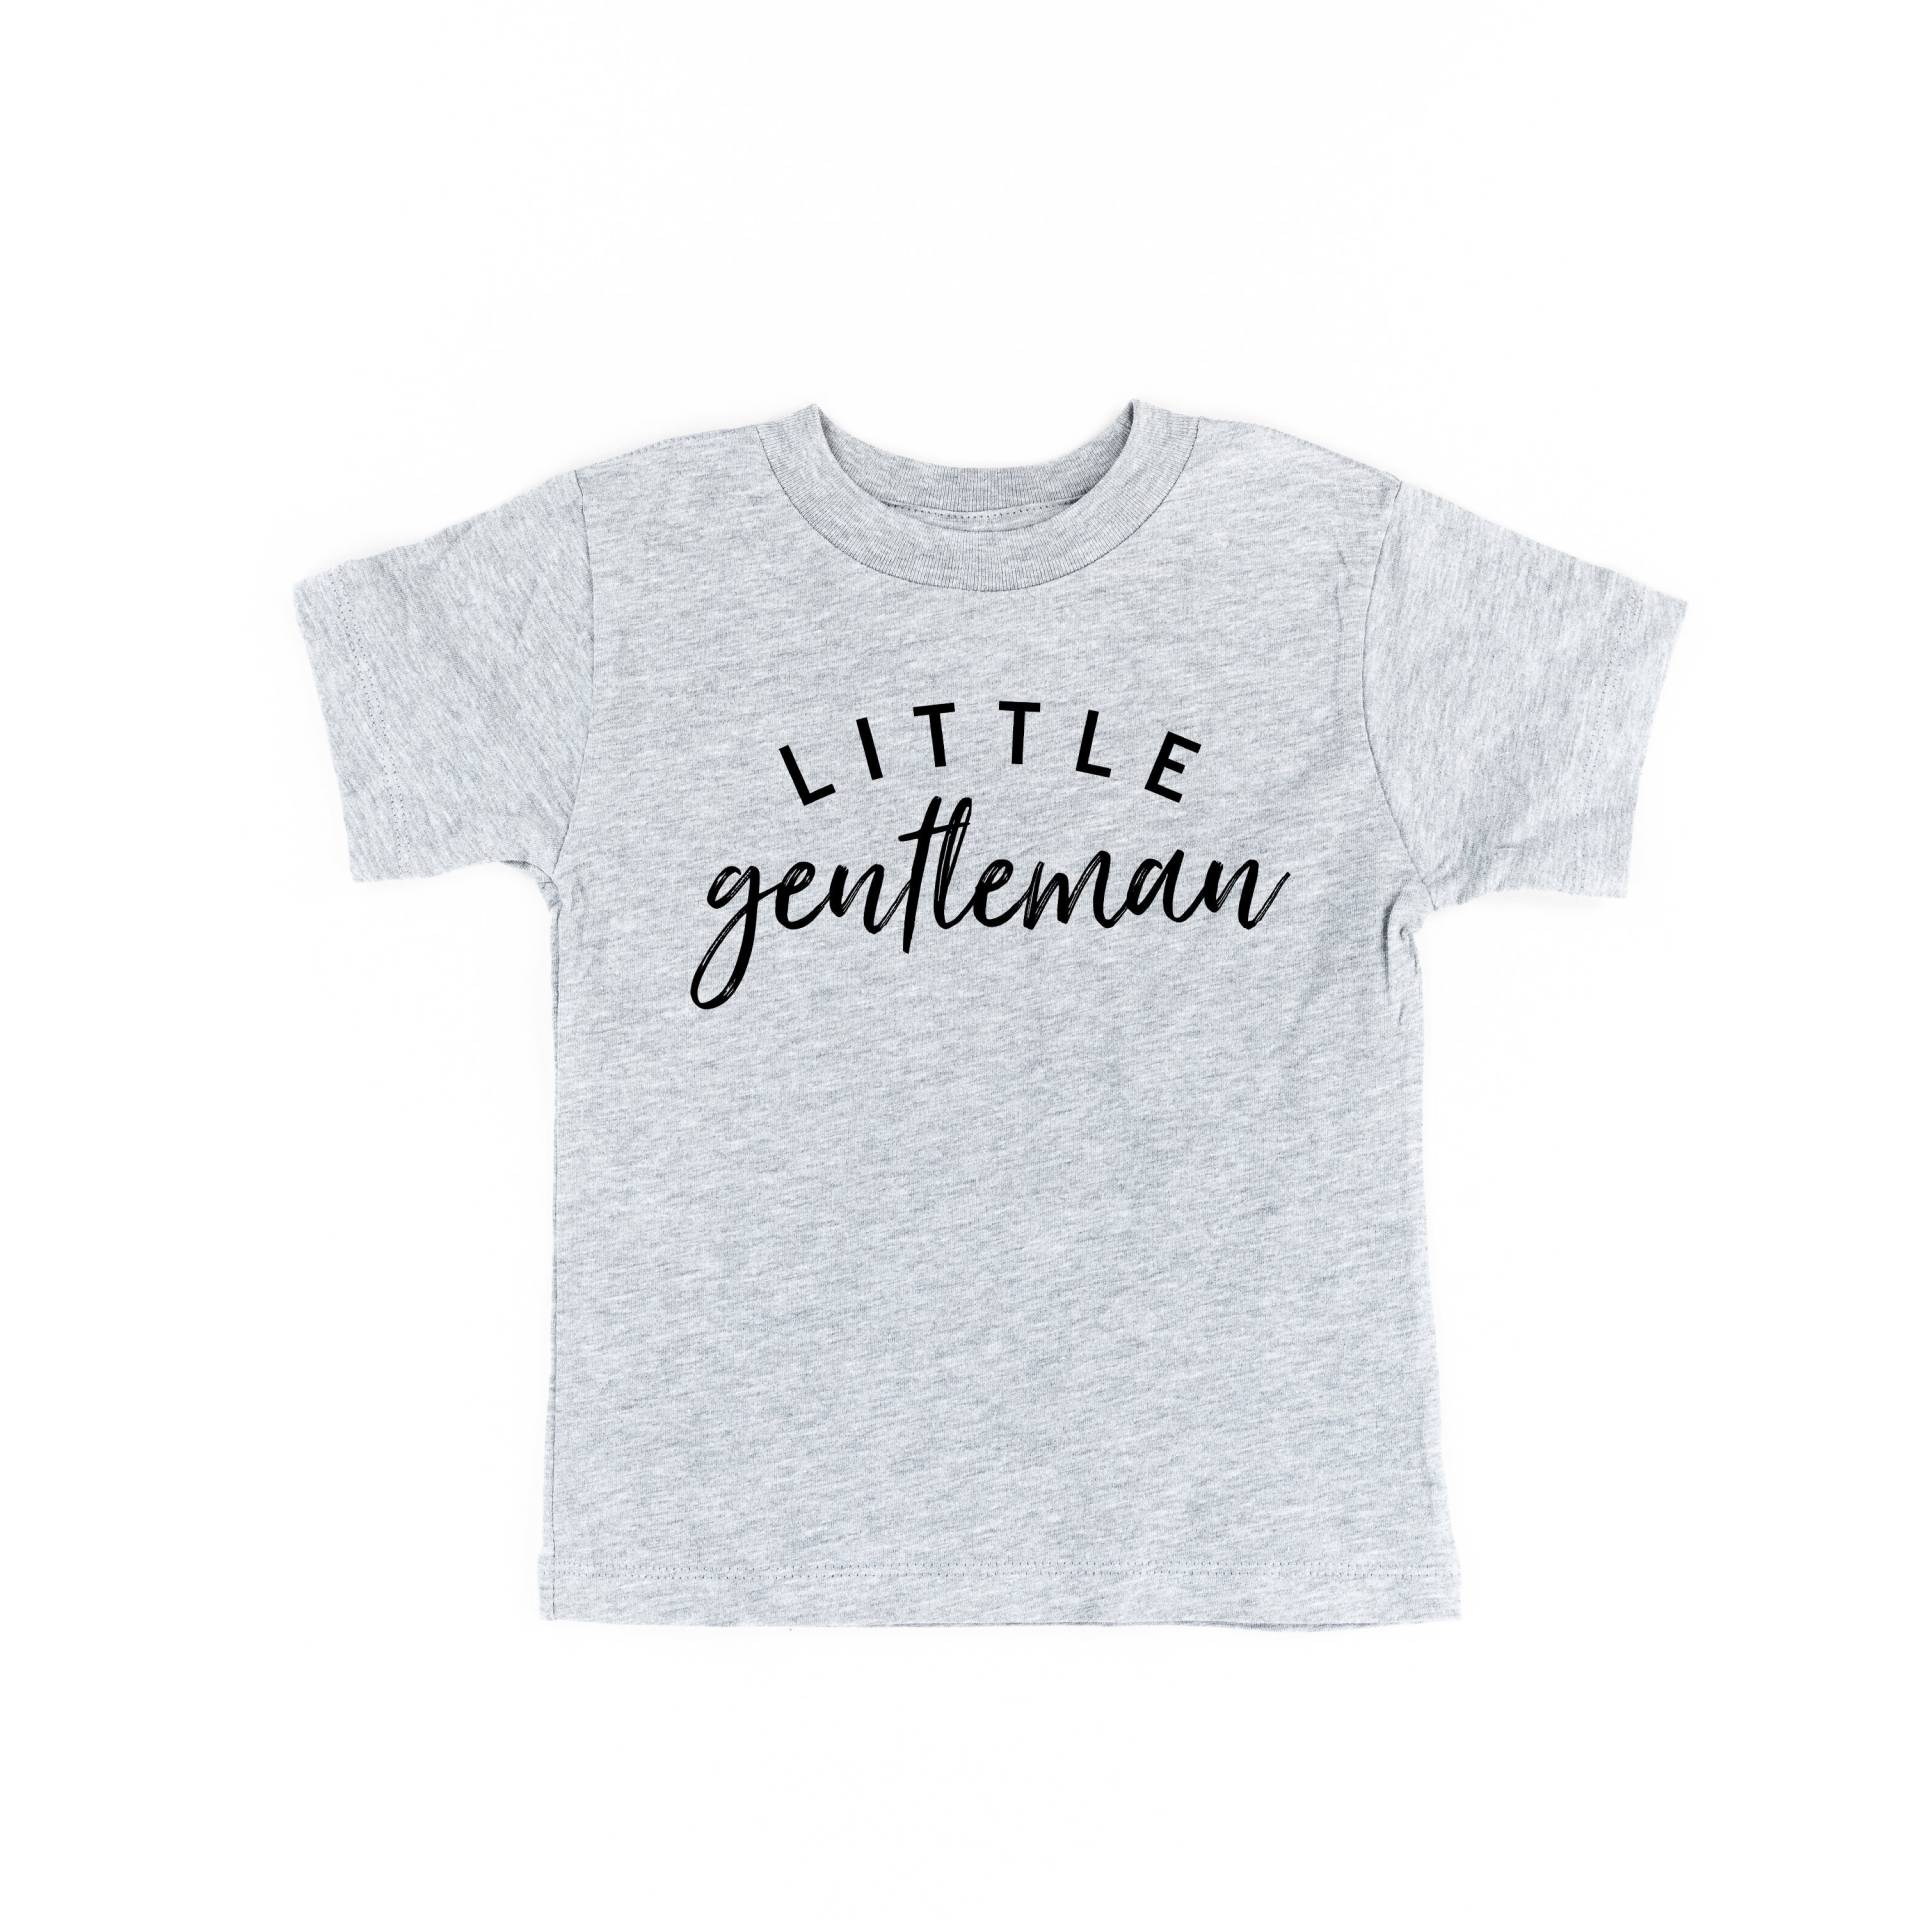 Kleiner Gentleman | Kinderhemden Junge Kleine Junge Shirts Baby Body Für Jungs Grafik Tees Hipster Kinder Herren von LittleMamaShirtShop